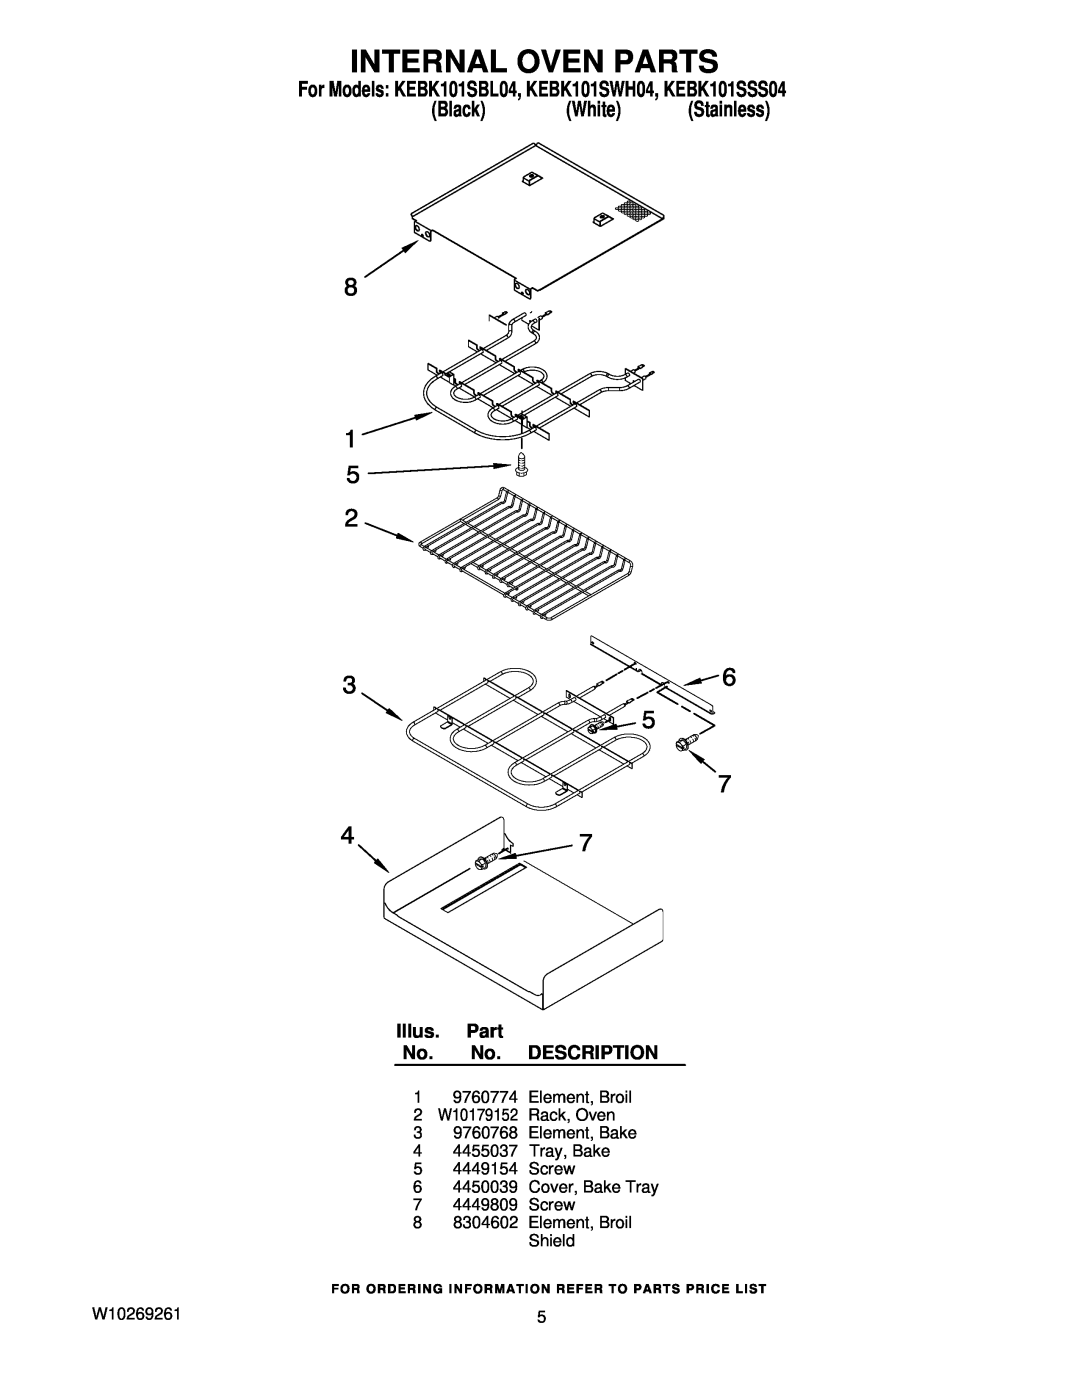 KitchenAid manual Internal Oven Parts, For Models KEBK101SBL04, KEBK101SWH04, KEBK101SSS04, Black White Stainless 